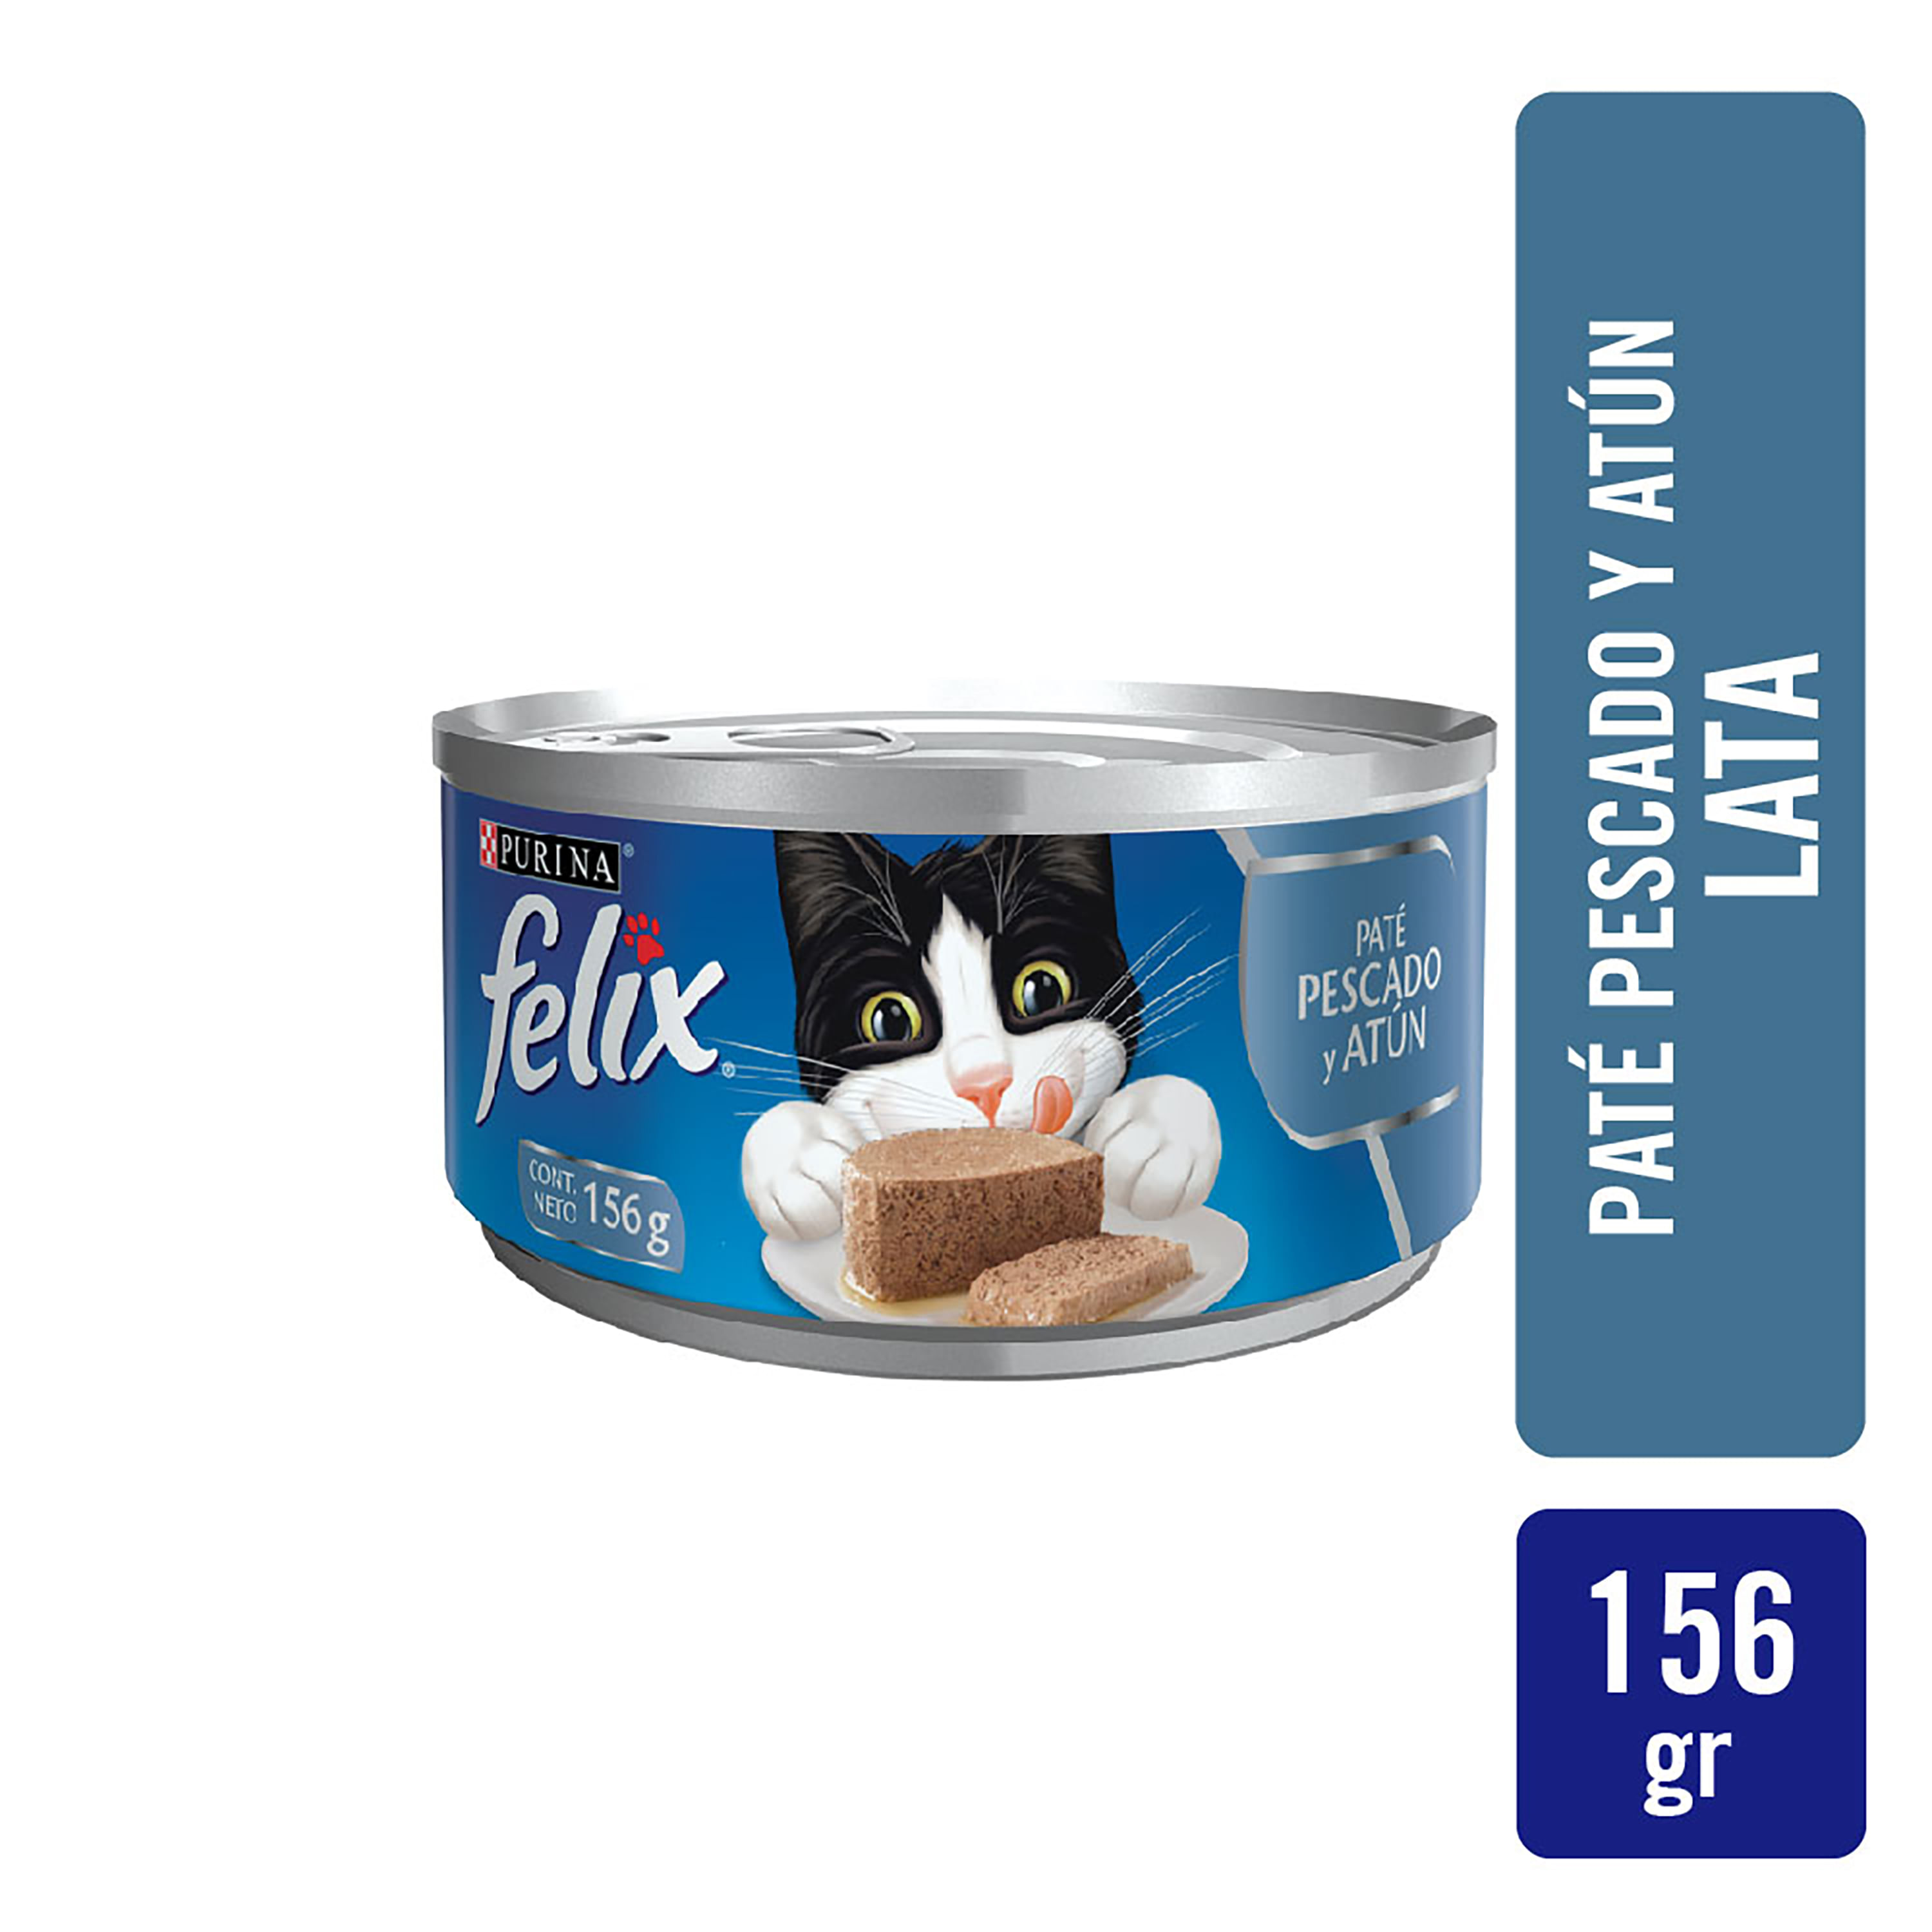 Alimento-H-medo-Gato-Adulto-Purina-Felix-Pat-Pescado-y-At-n-156gr-1-6425